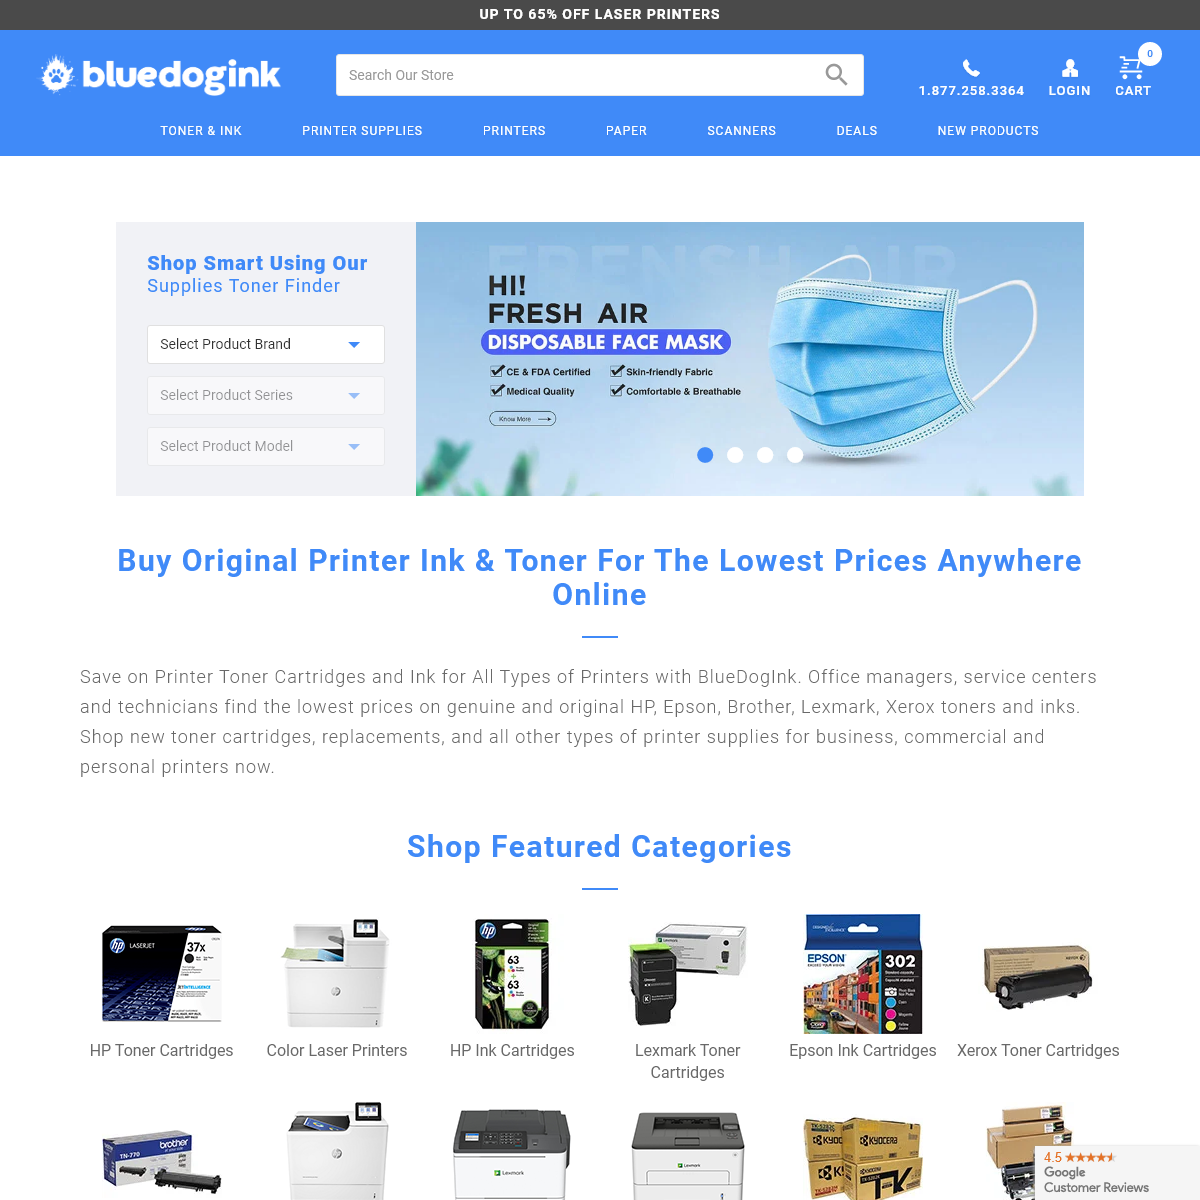 A complete backup of bluedogink.com